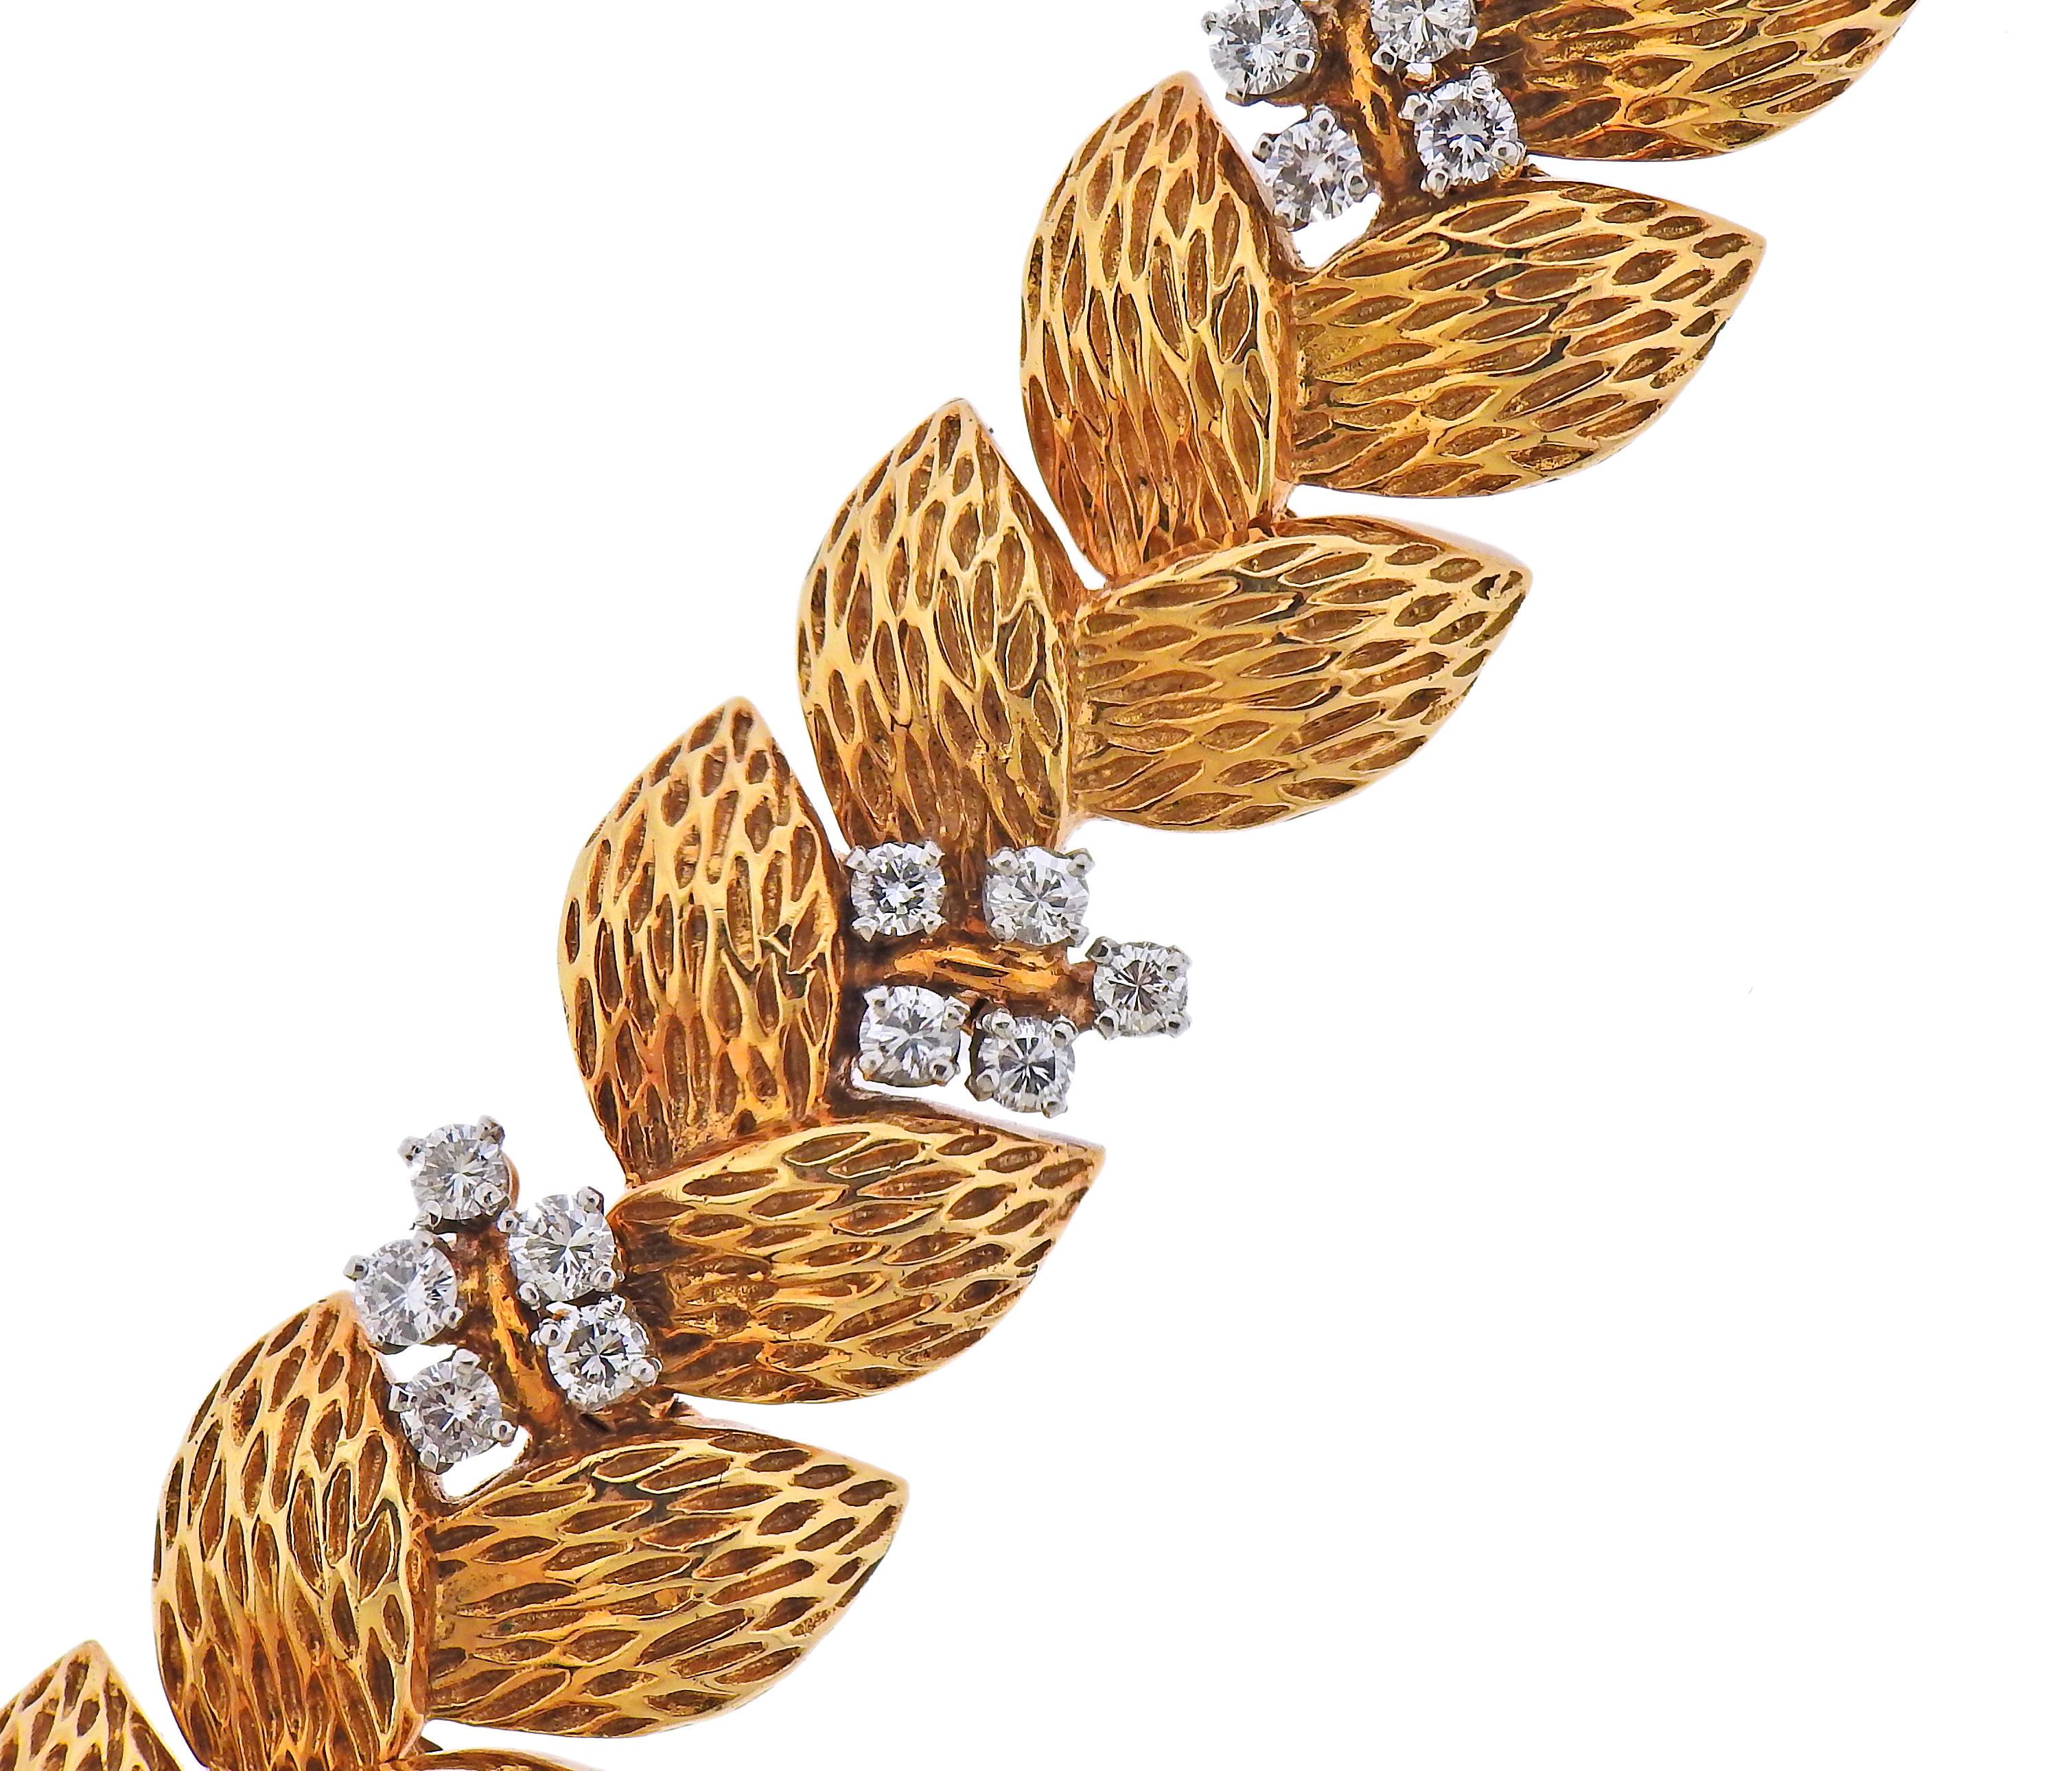 Bracelet Cartier Paris des années 1960, réalisé en or jaune 18k avec environ 2,50cts de diamants. Le bracelet mesure 7